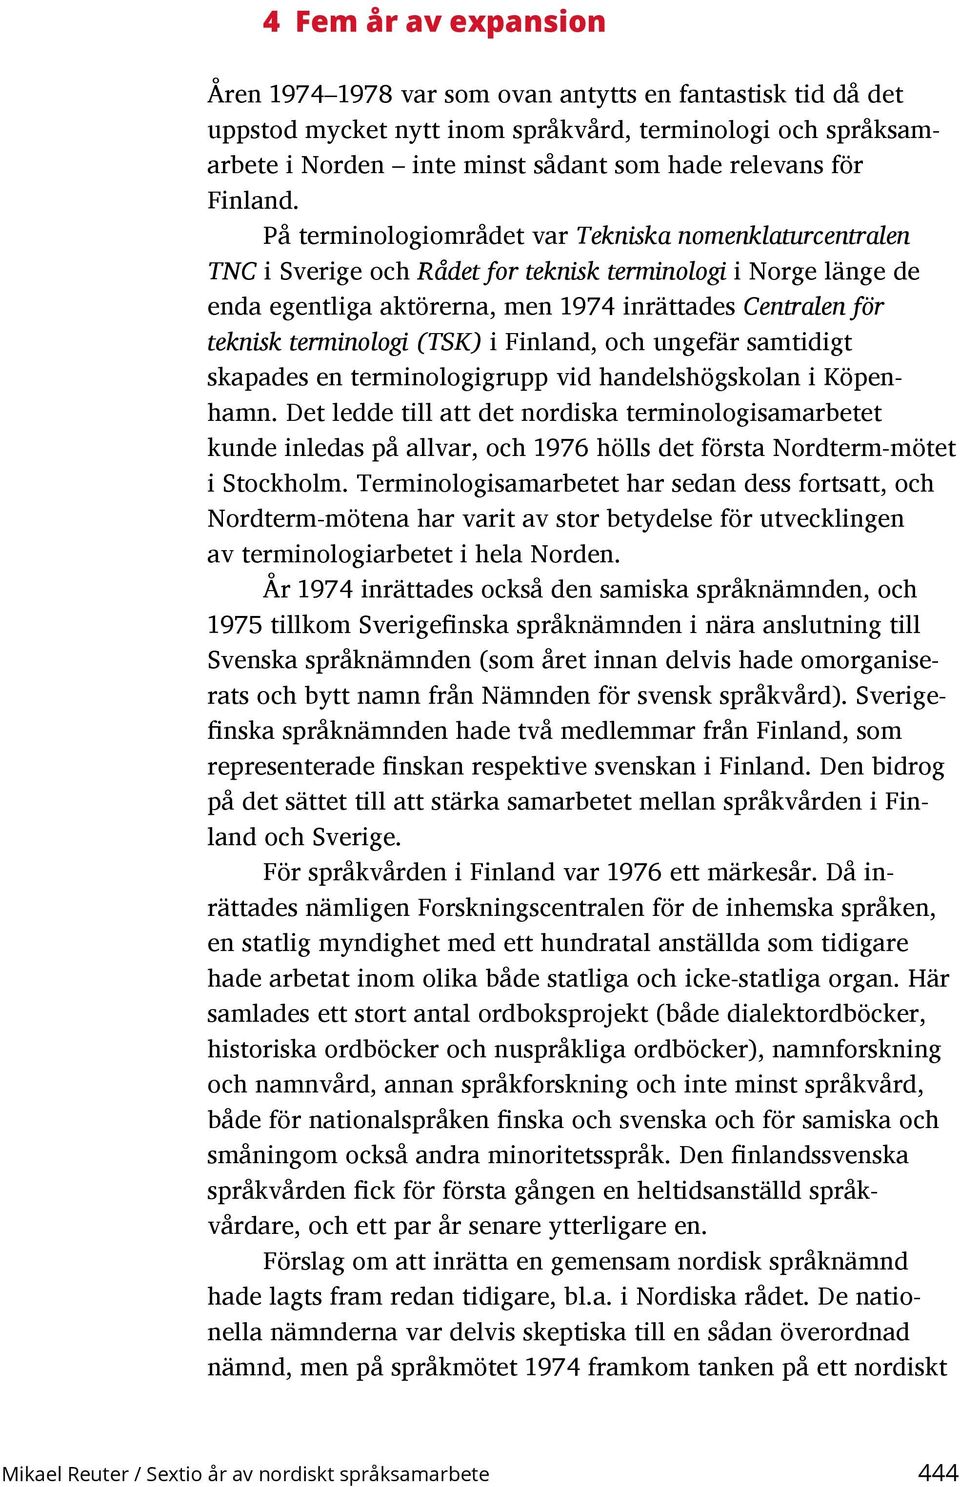 På terminologiområdet var Tekniska nomenklaturcentralen TNC i Sverige och Rådet for teknisk terminologi i Norge länge de enda egentliga aktörerna, men 1974 inrättades Centralen för teknisk